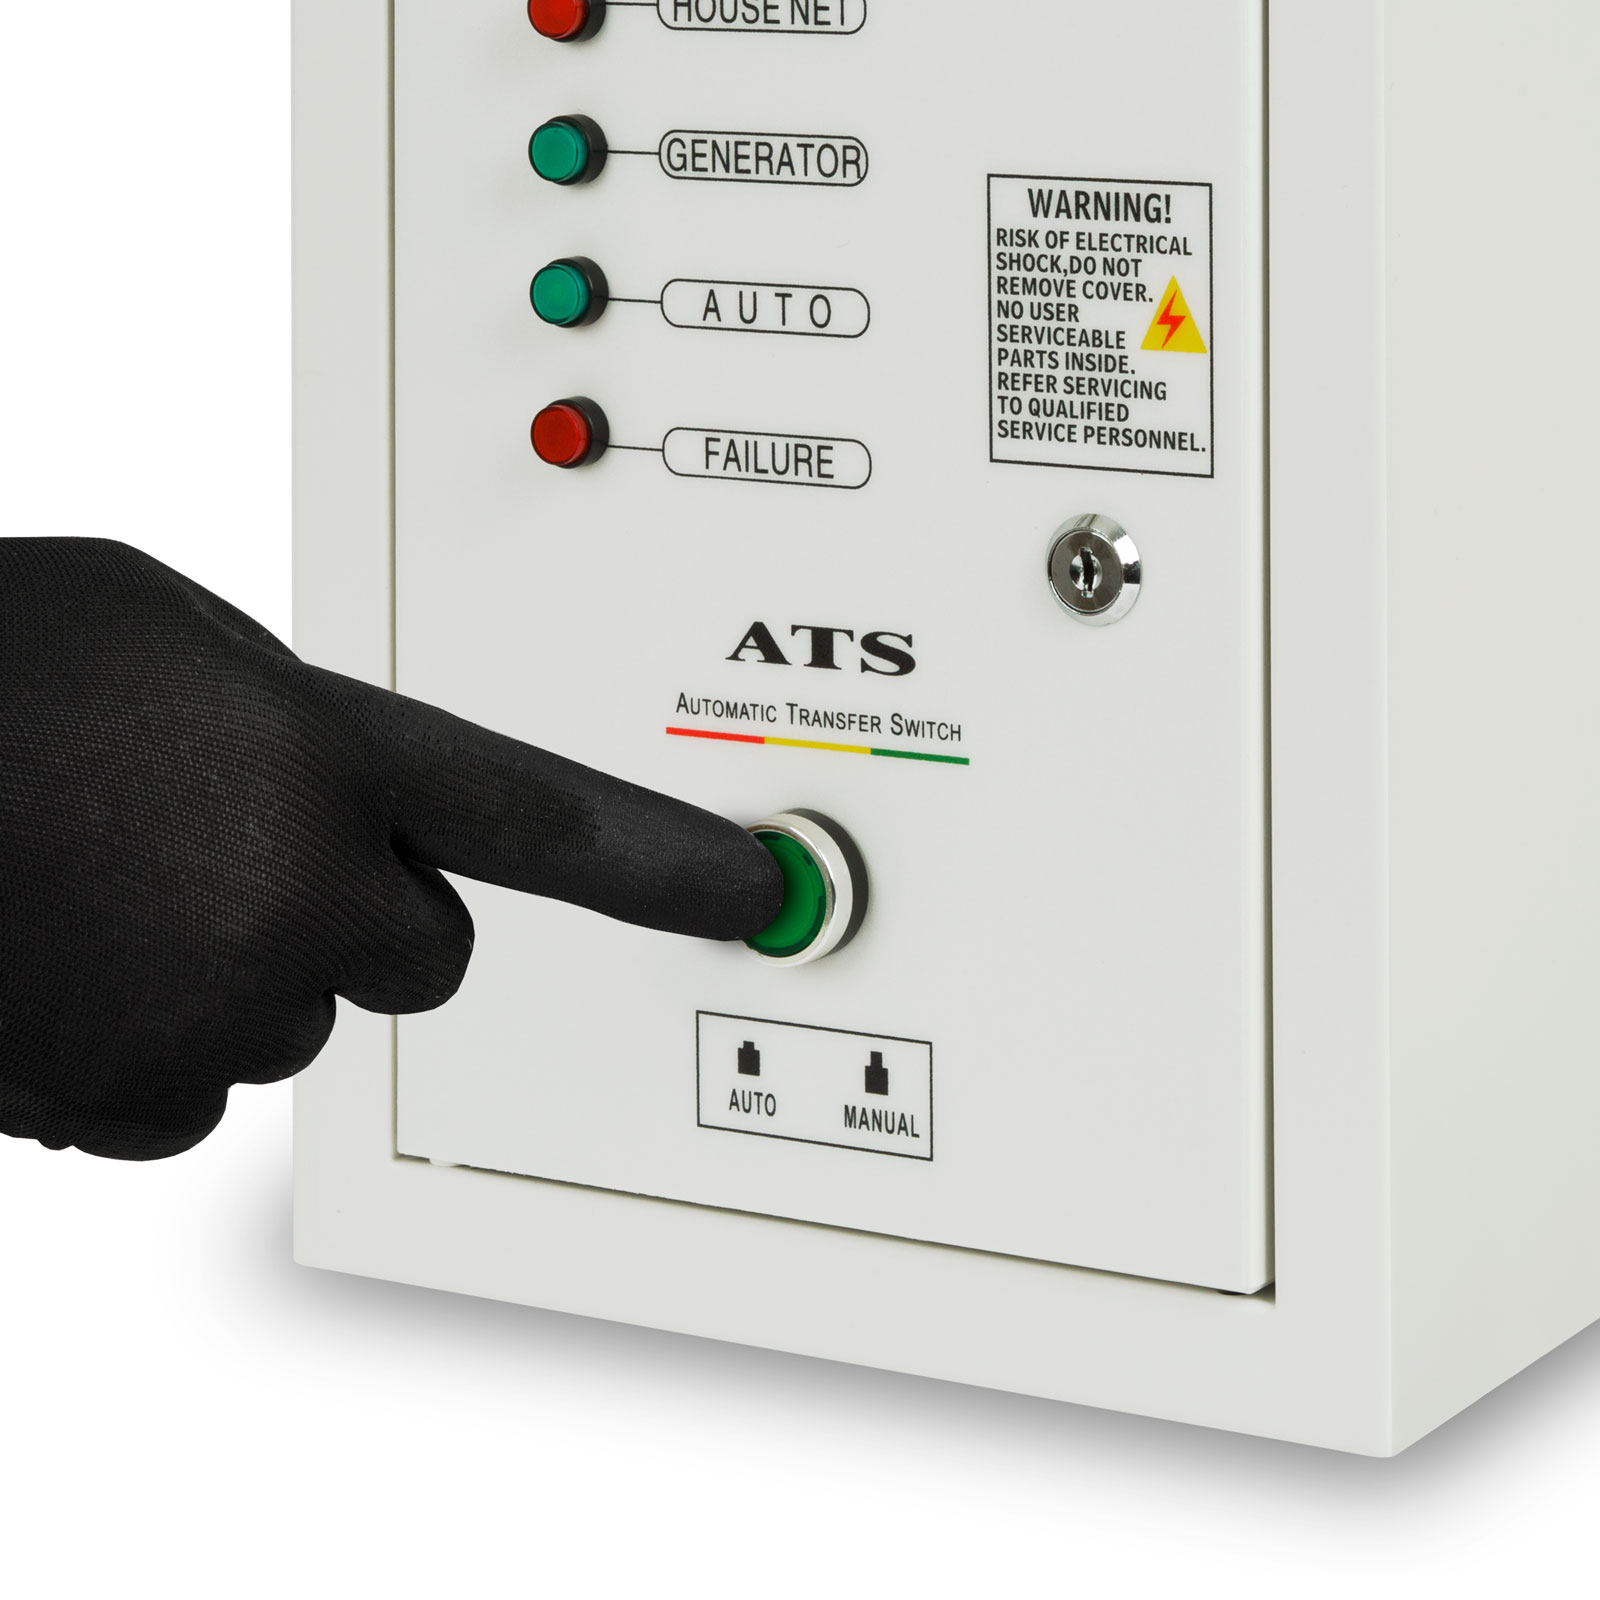 ATS meccanico, automatic transfer switch per impianto fotovoltaico 